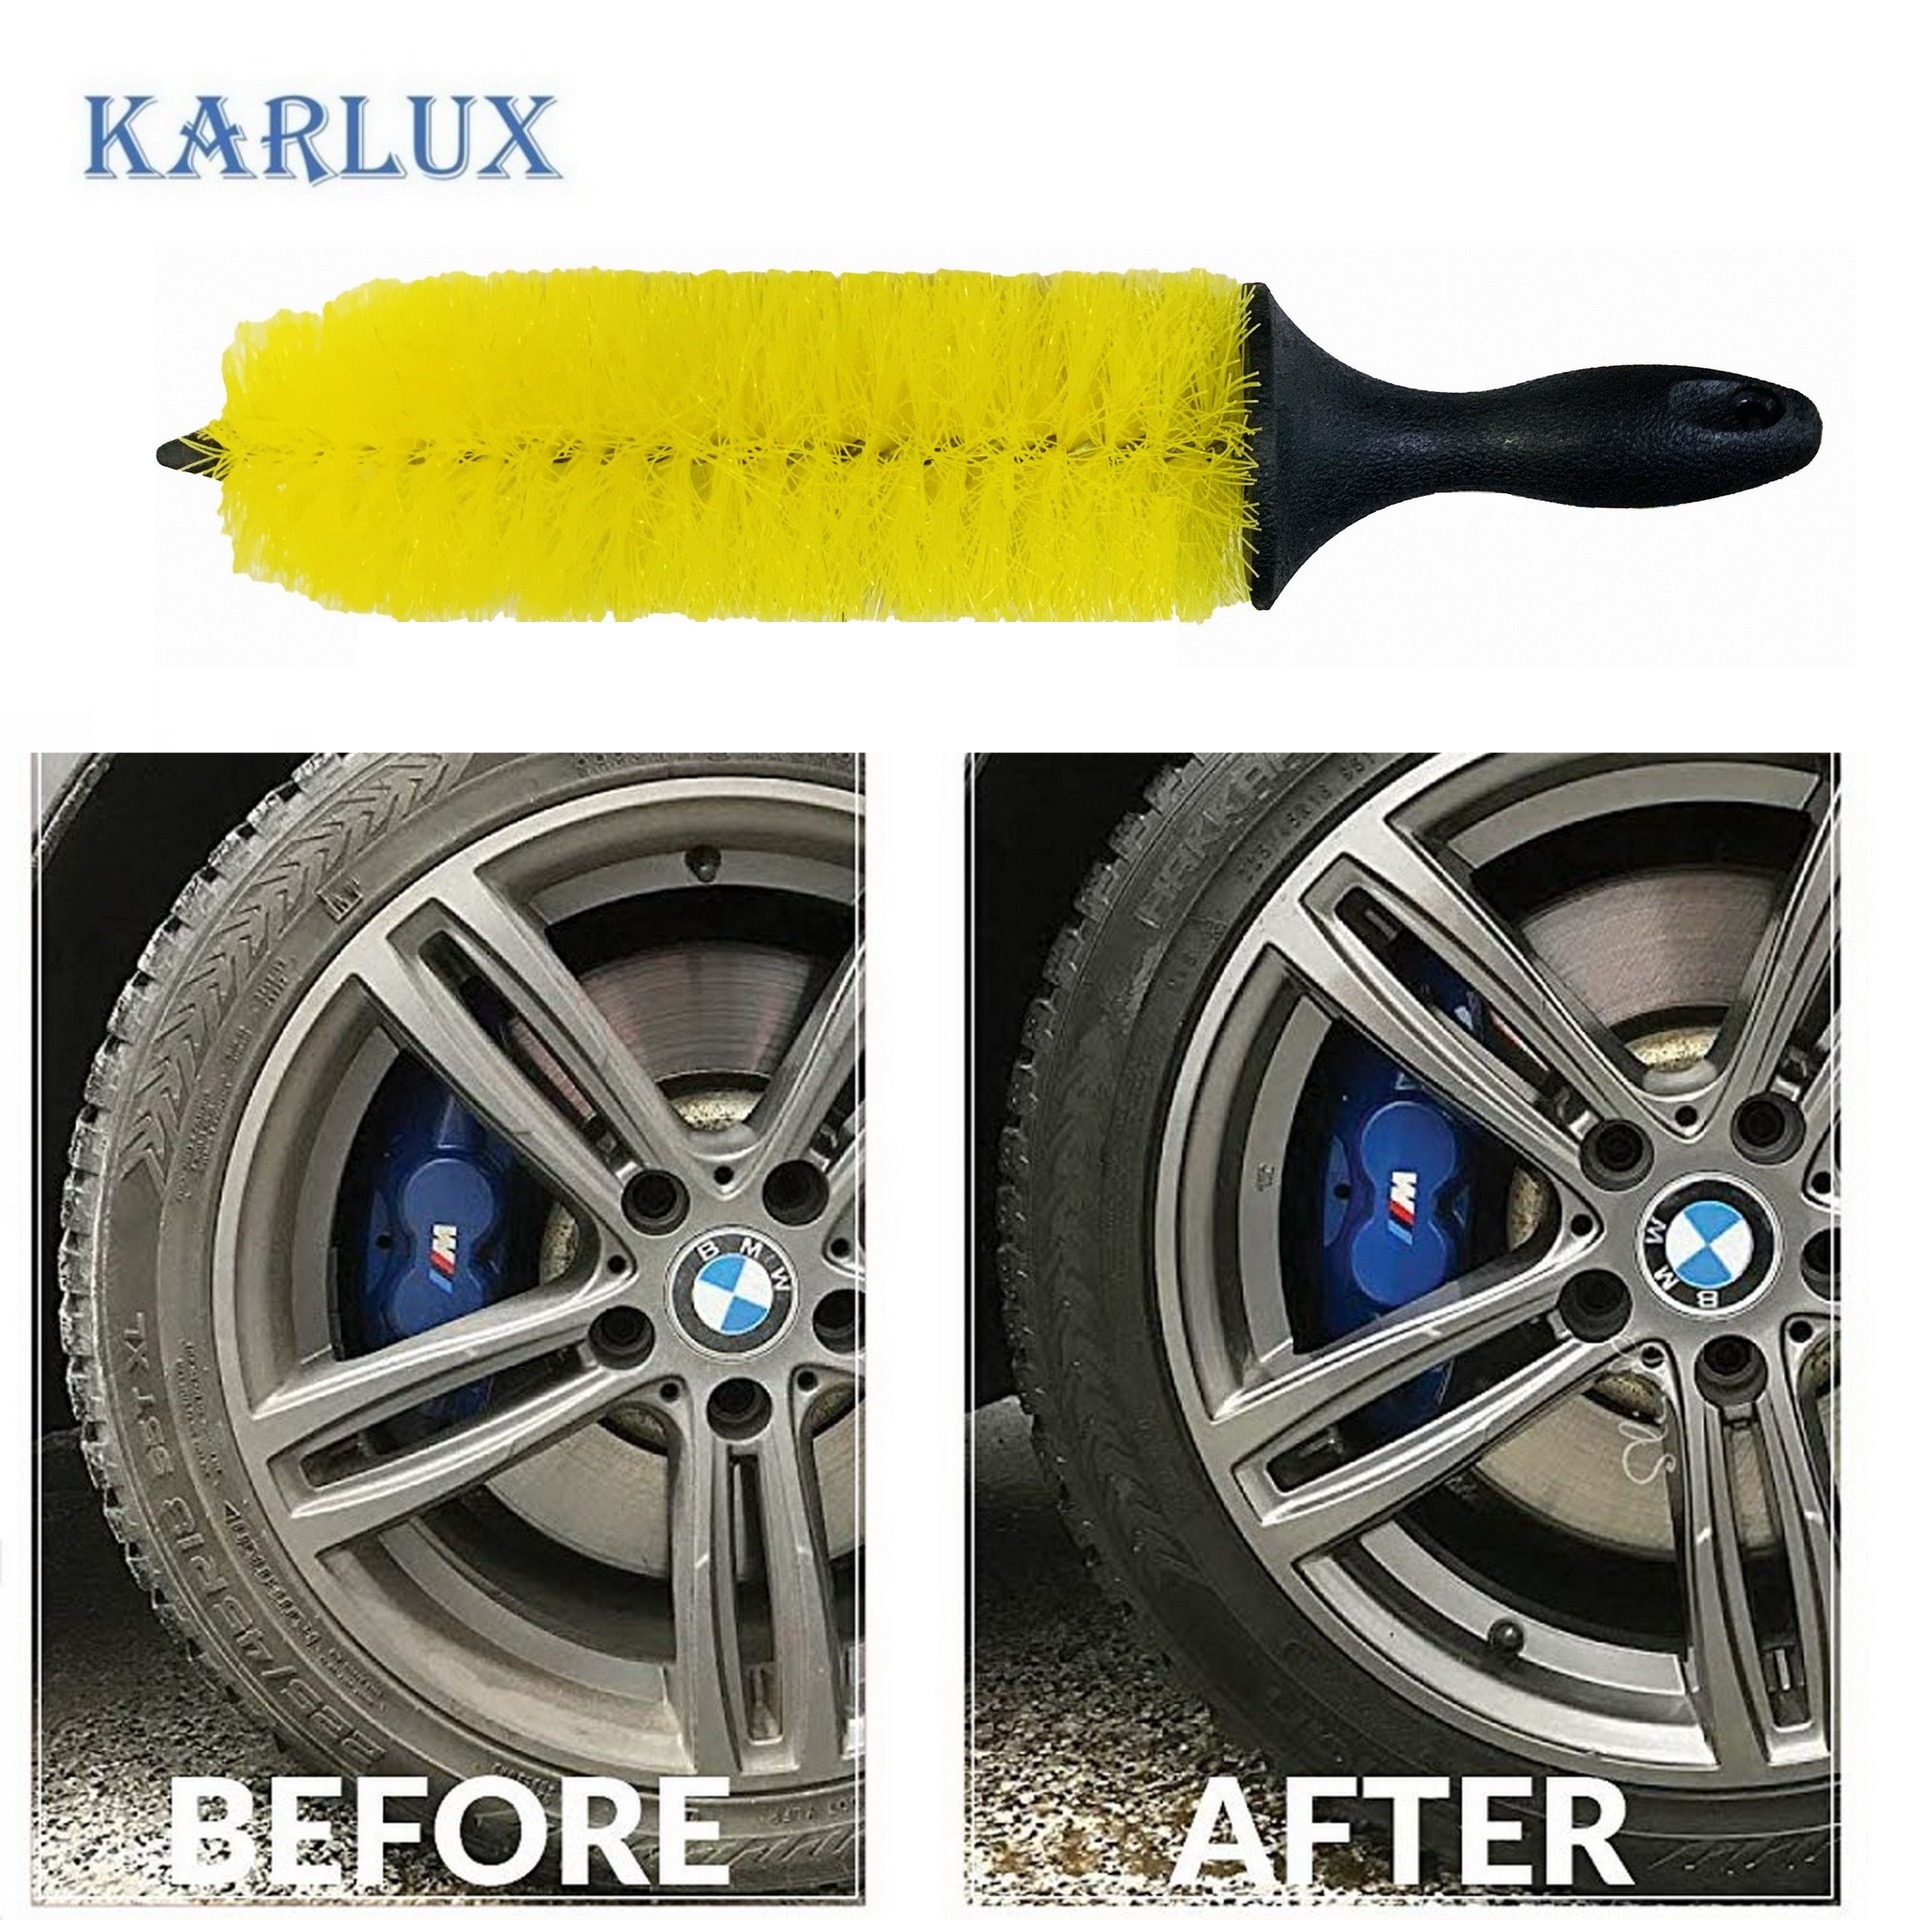 Karlux  แปรงล้อรถ กว้าง9.5cm x ยาว37cm ขนสีเหลือง ใช้อเนกประสงค์สำหรับยาง, ซี่ล้อรถ, รถจักรยานยนต์, เครื่องยนต์, ท่อไอเสีย